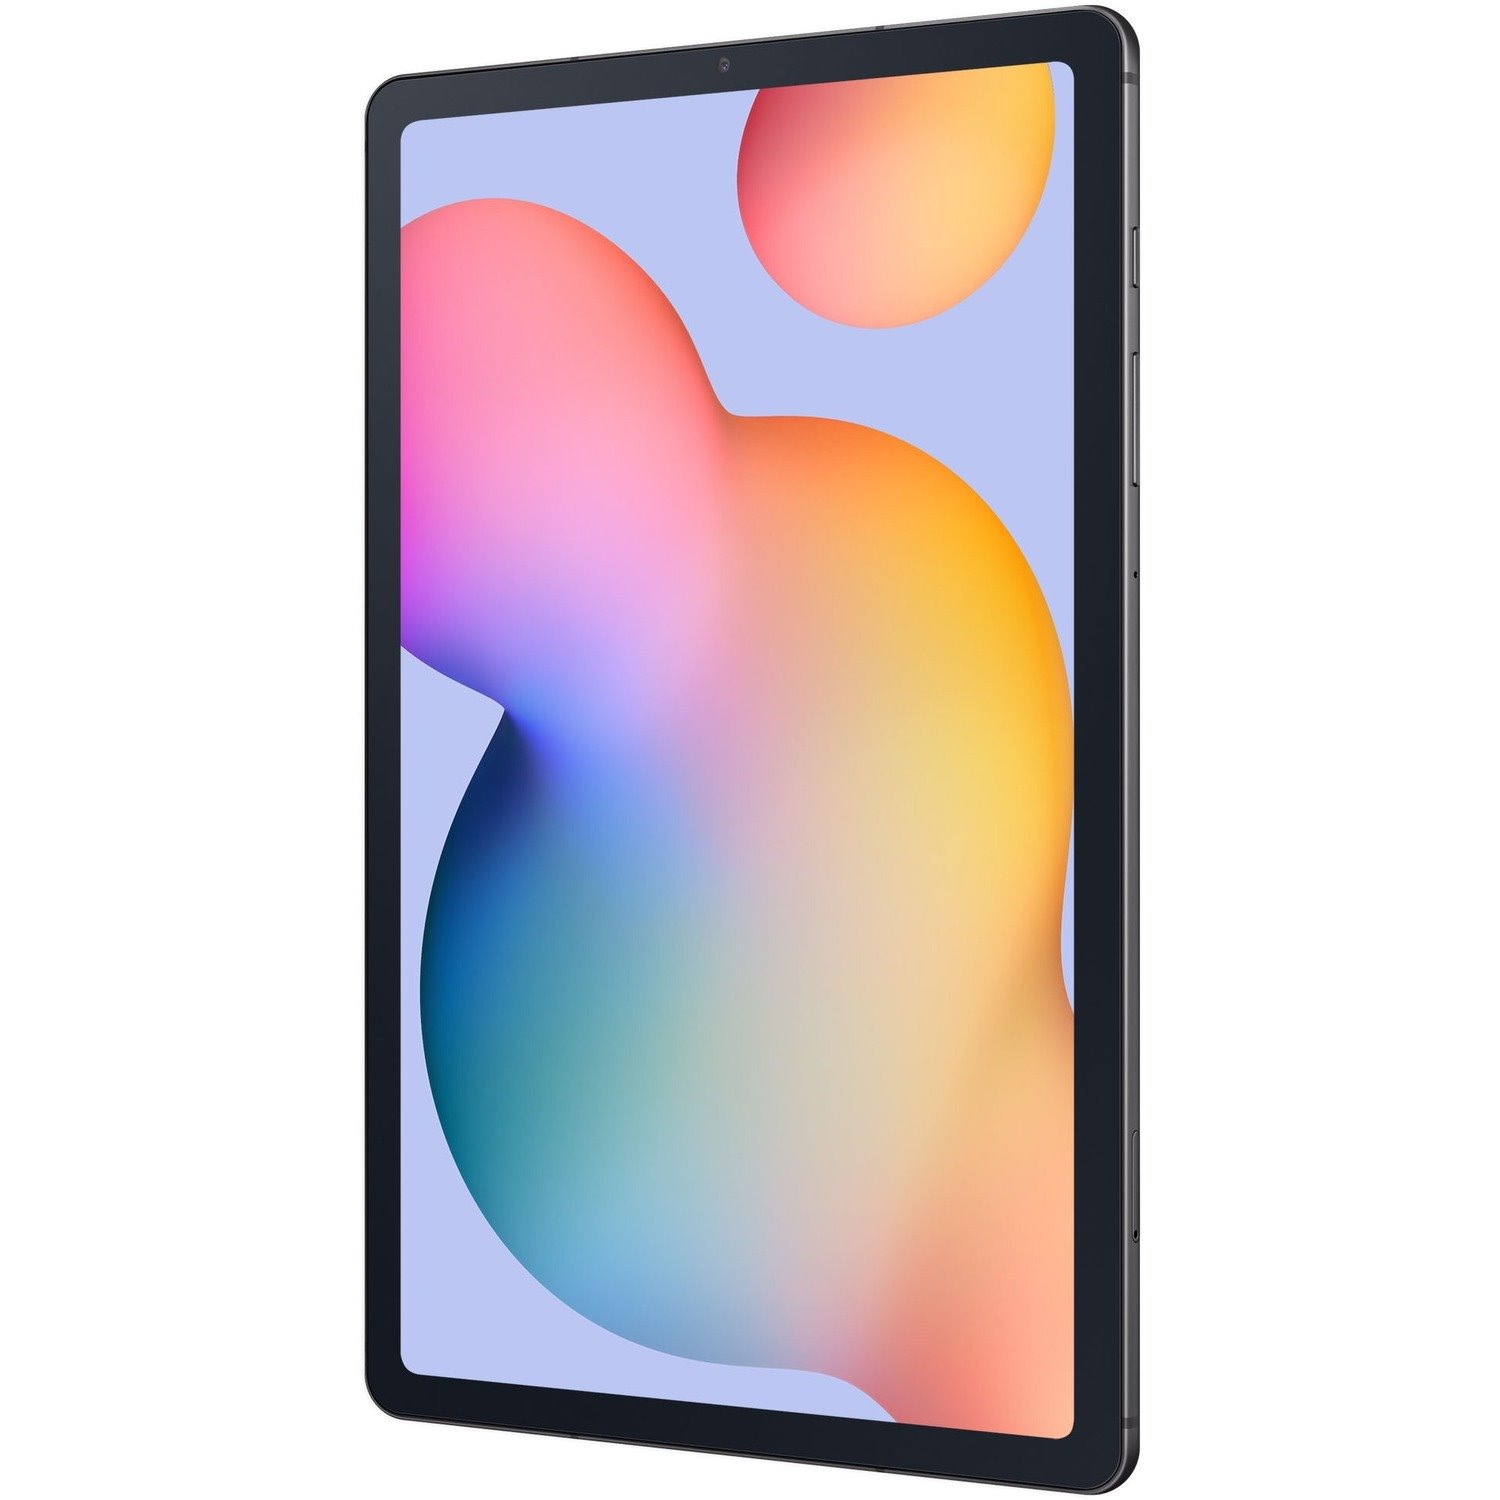 Samsung Galaxy Tab S6 Lite SM-P615 Tablet - 26.4 cm (10.4") WUXGA+ - Octa-core (Cortex A73 Quad-core (4 Core) 2.30 GHz + Cortex A53 Quad-core (4 Core) 1.70 GHz) - 4 GB RAM - 64 GB Storage - Android 10 - 4G - Oxford Gray